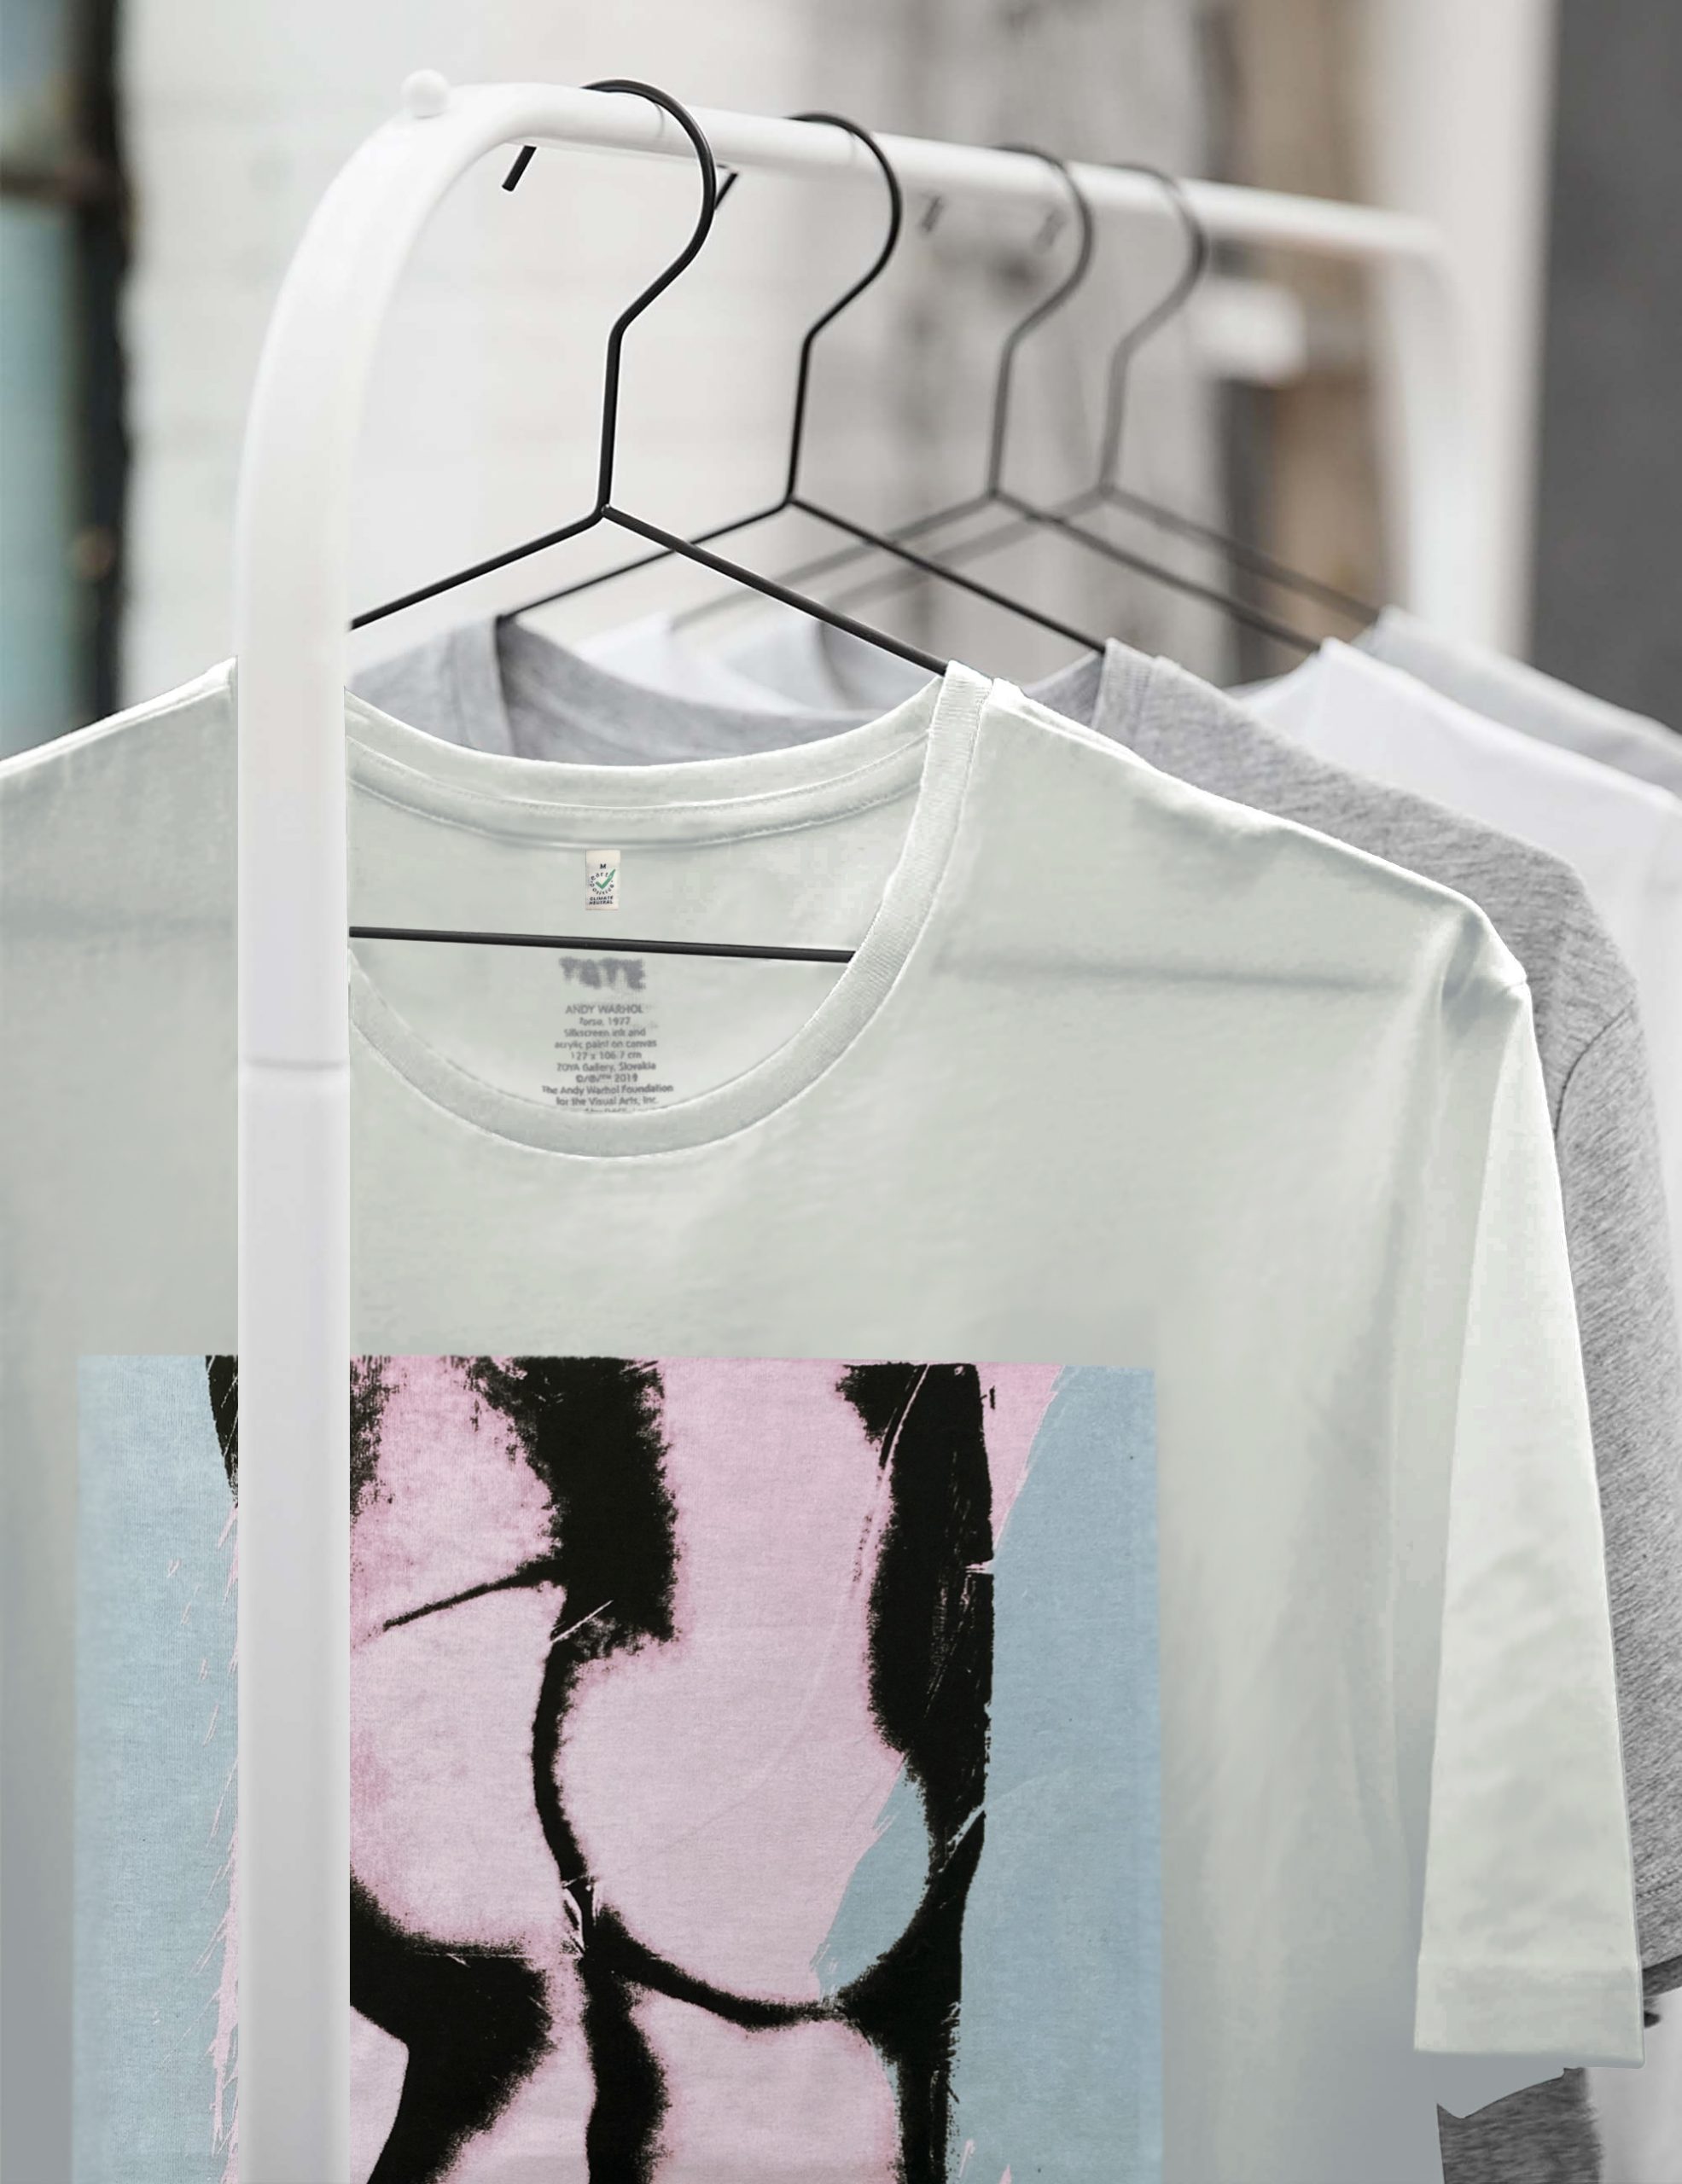 T-shirt printing – Tate Enterprises Andy Warhol